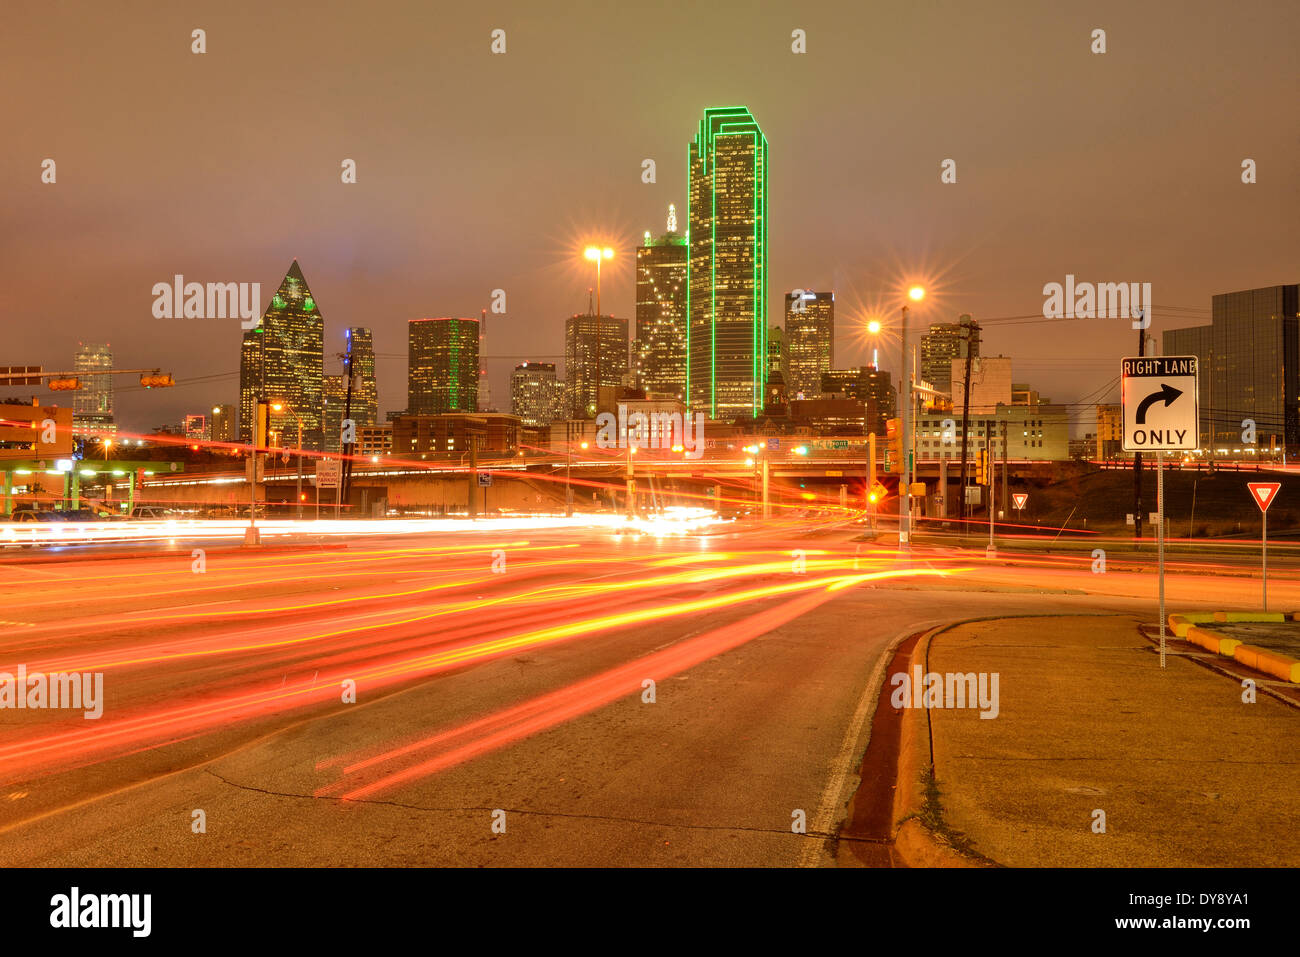 America del nord Texas USA Stati Uniti America Dallas freeway street proliferazione urbana urbano traffico di notte le luci dello skyline di notte Foto Stock